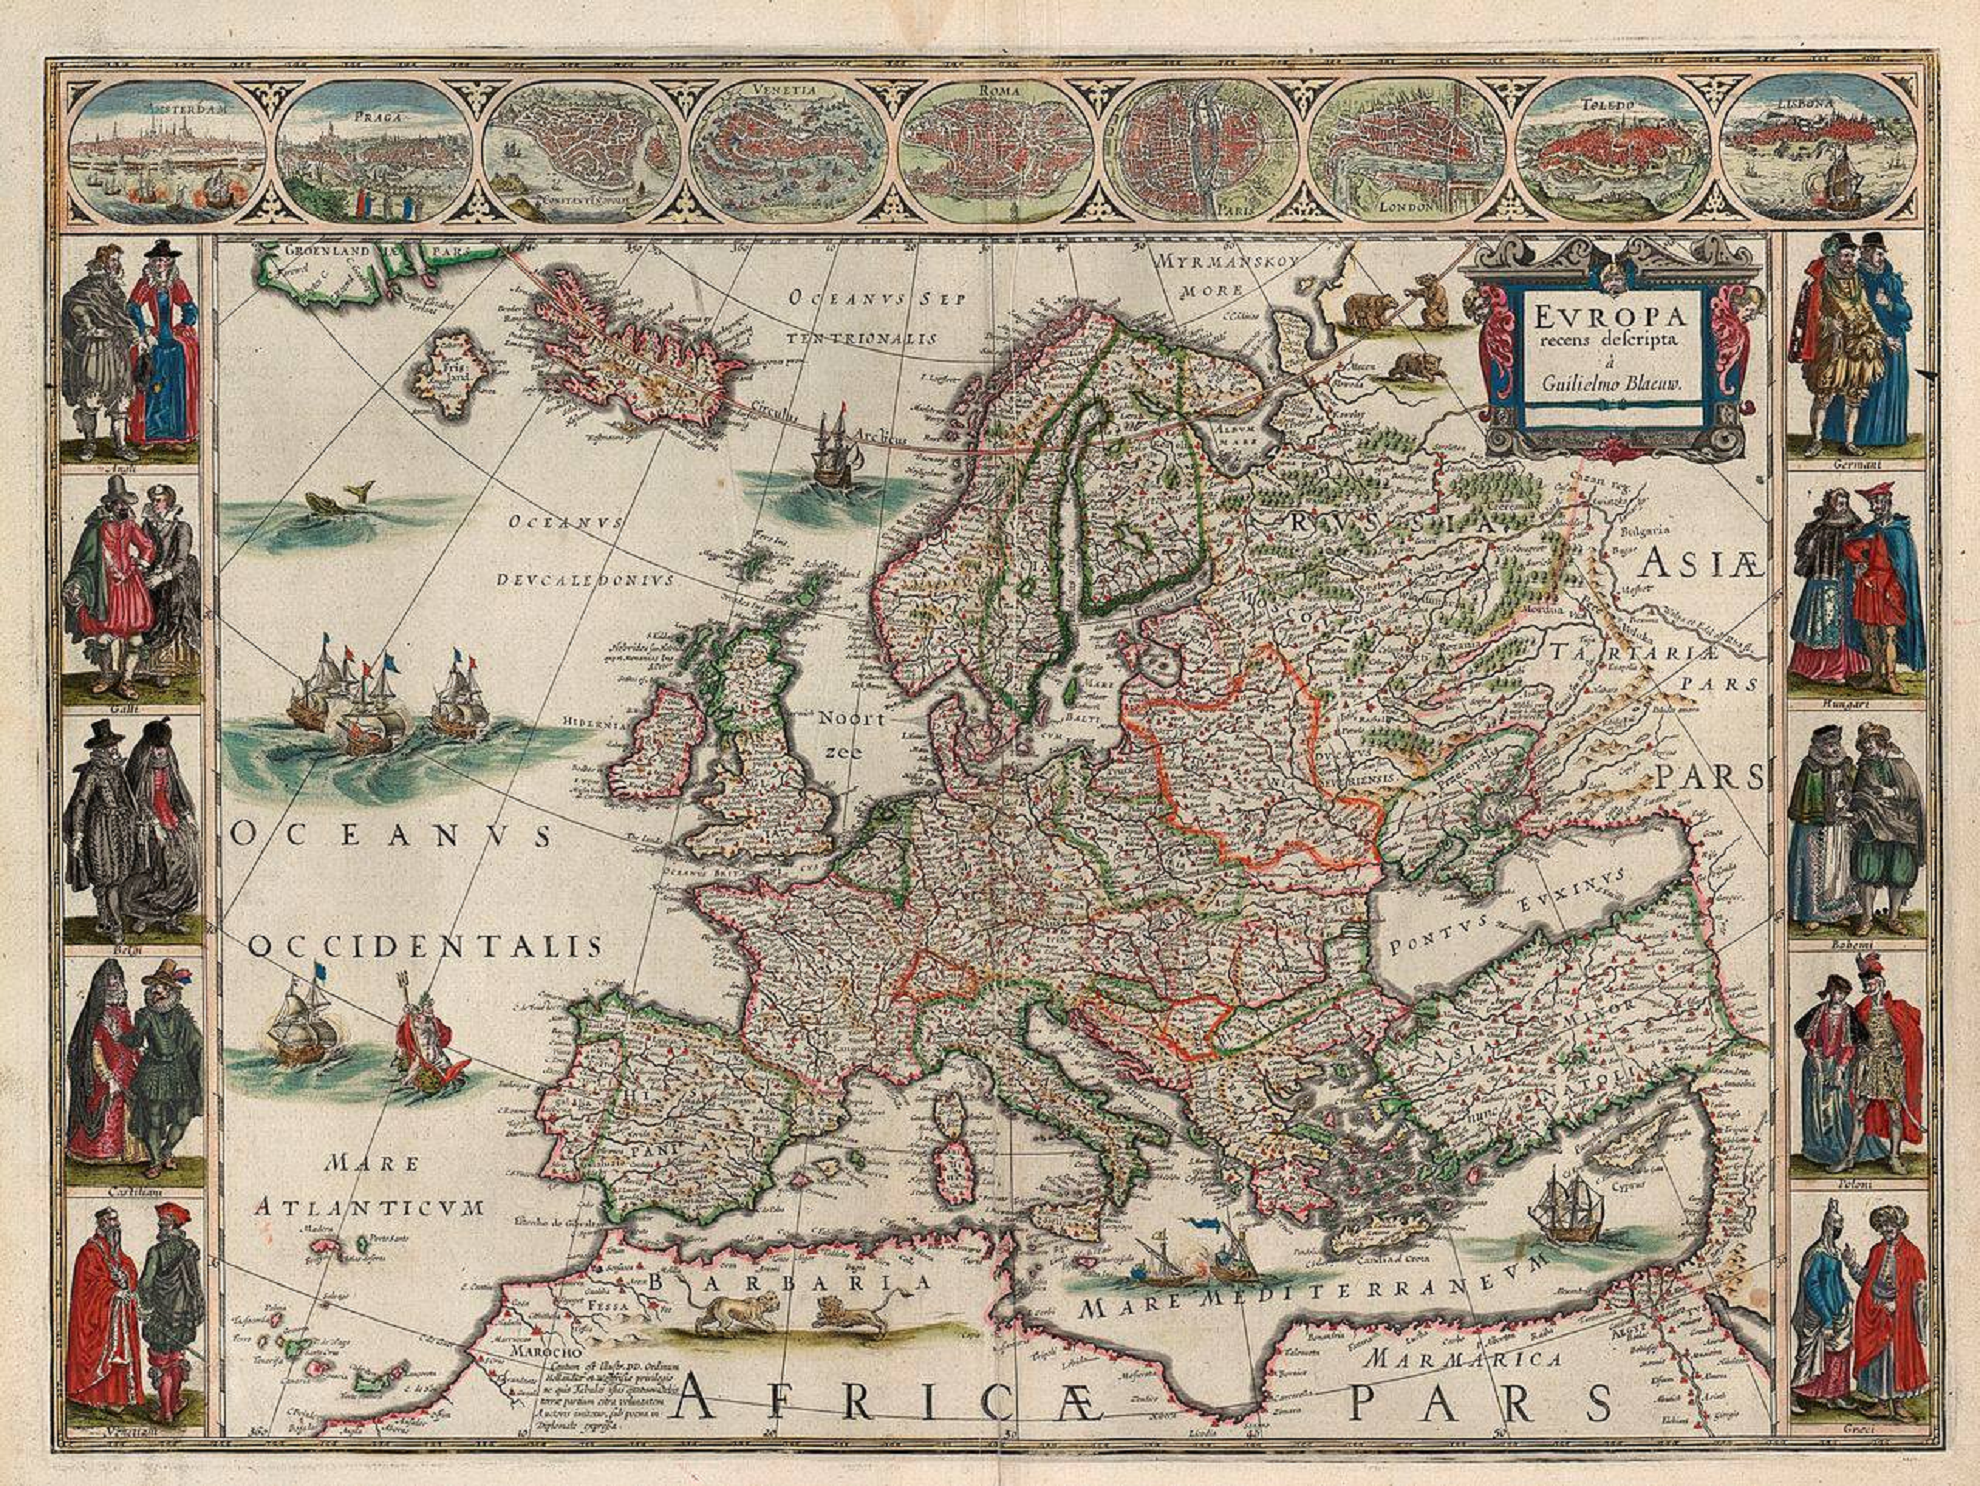 Nace Jan Blaeu, el cartógrafo que dibujó el mapa de la I República Catalana